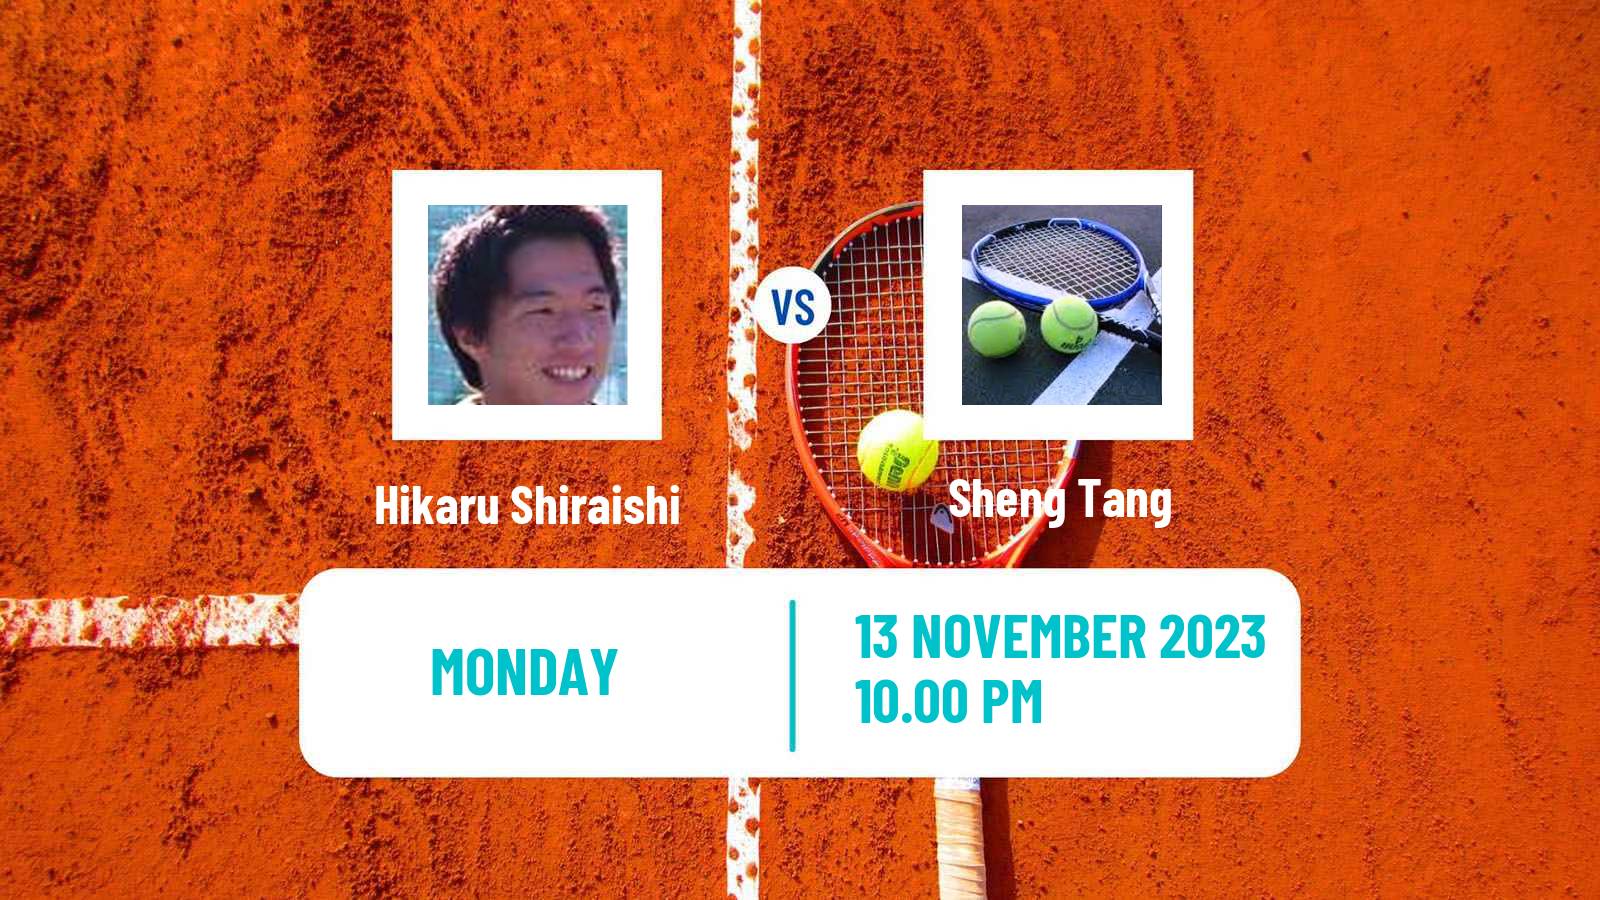 Tennis ITF M15 Kuching Men Hikaru Shiraishi - Sheng Tang